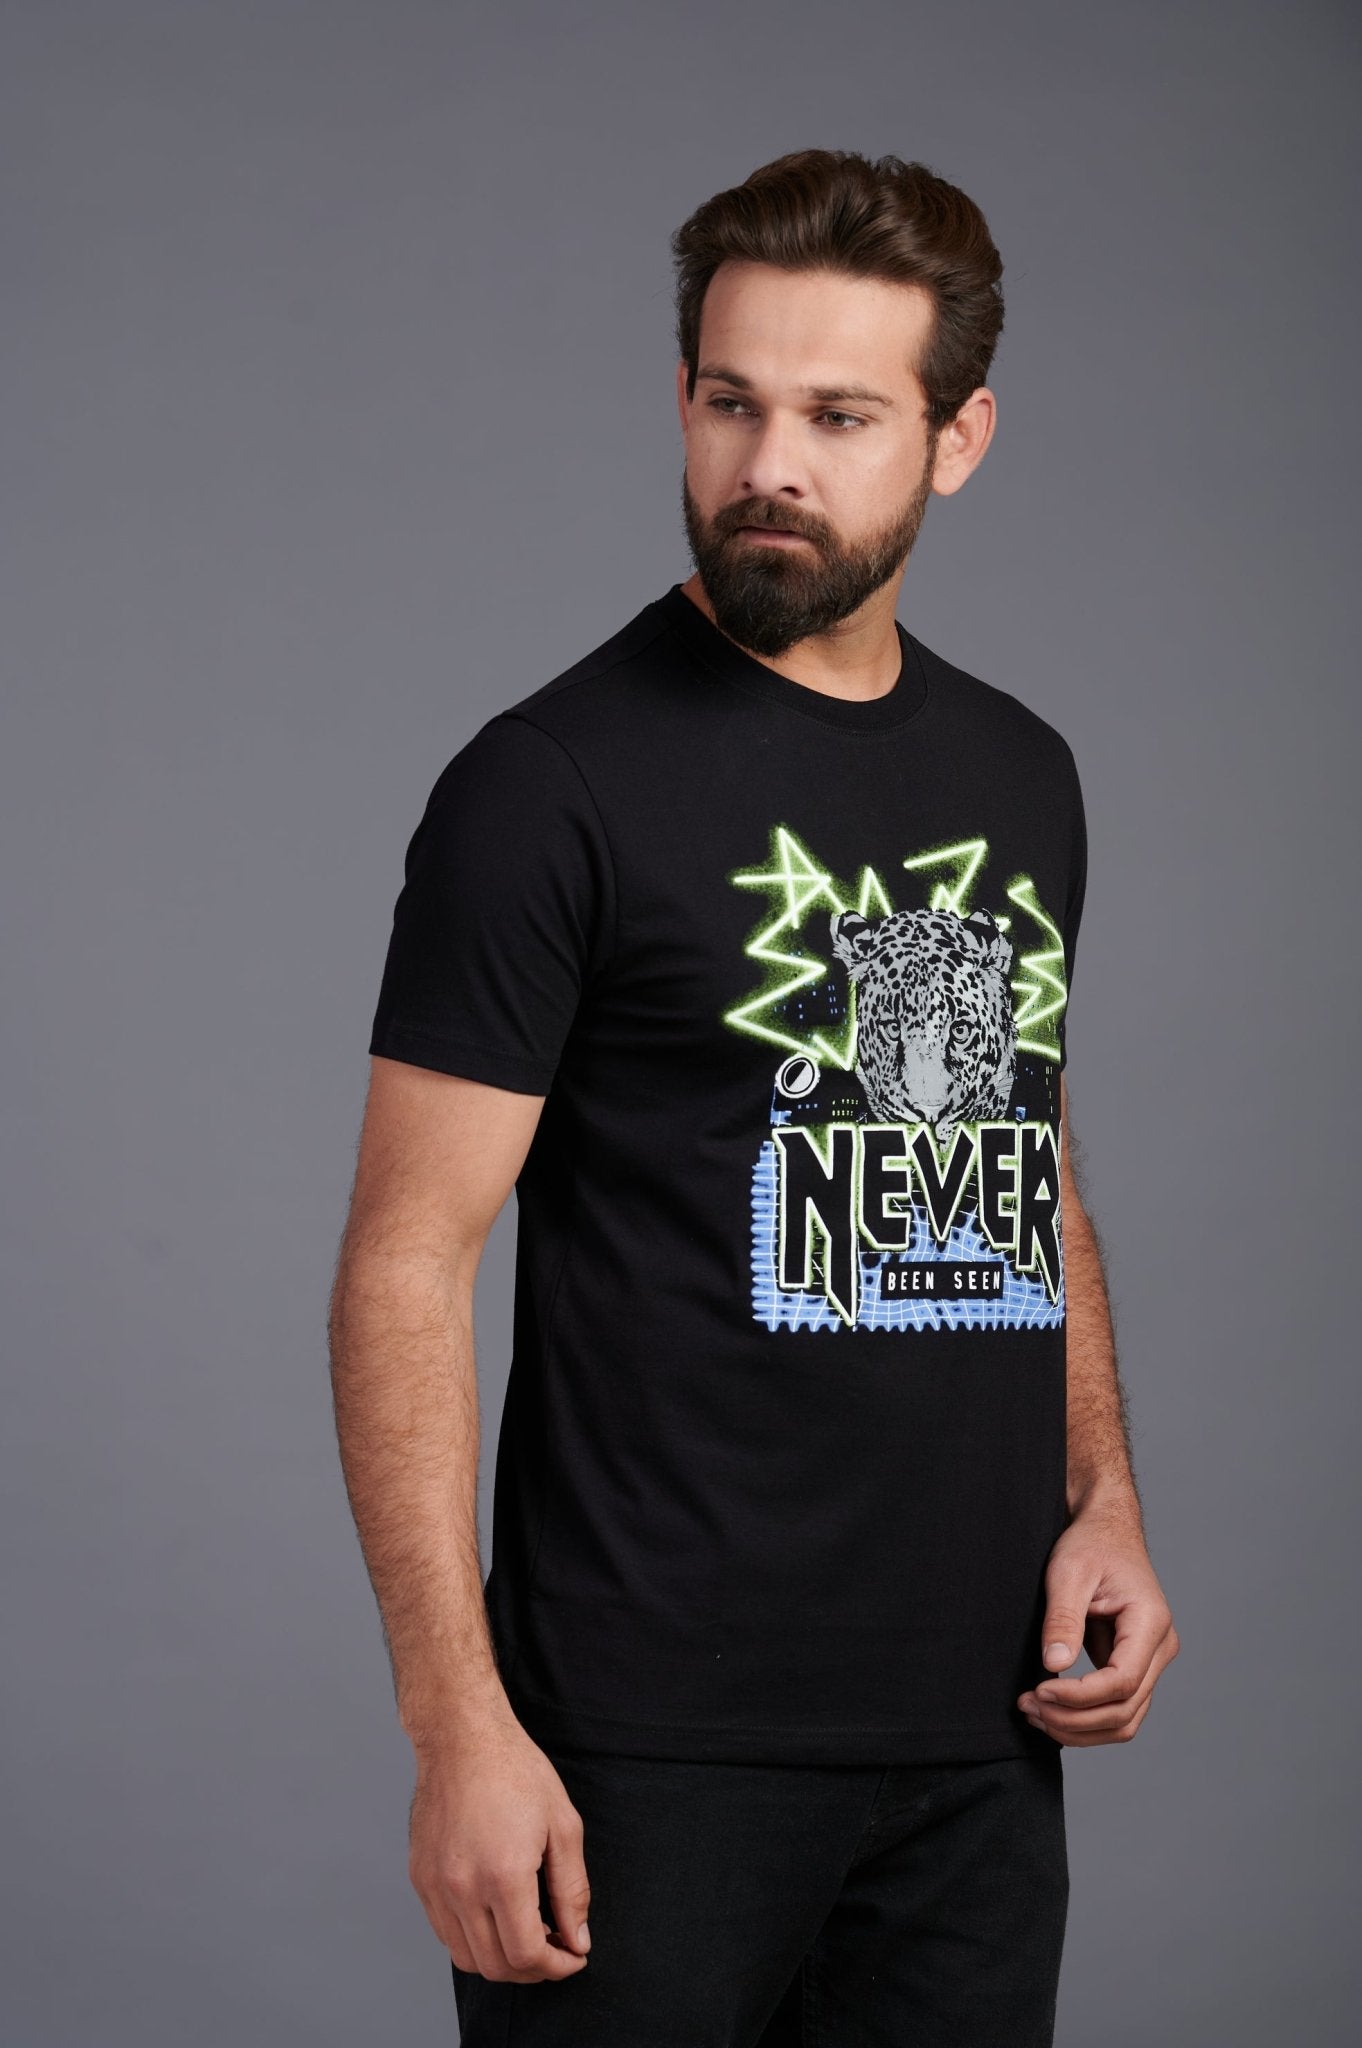 Never Been Seen Printed Black T-Shirt for Men - Go Devil